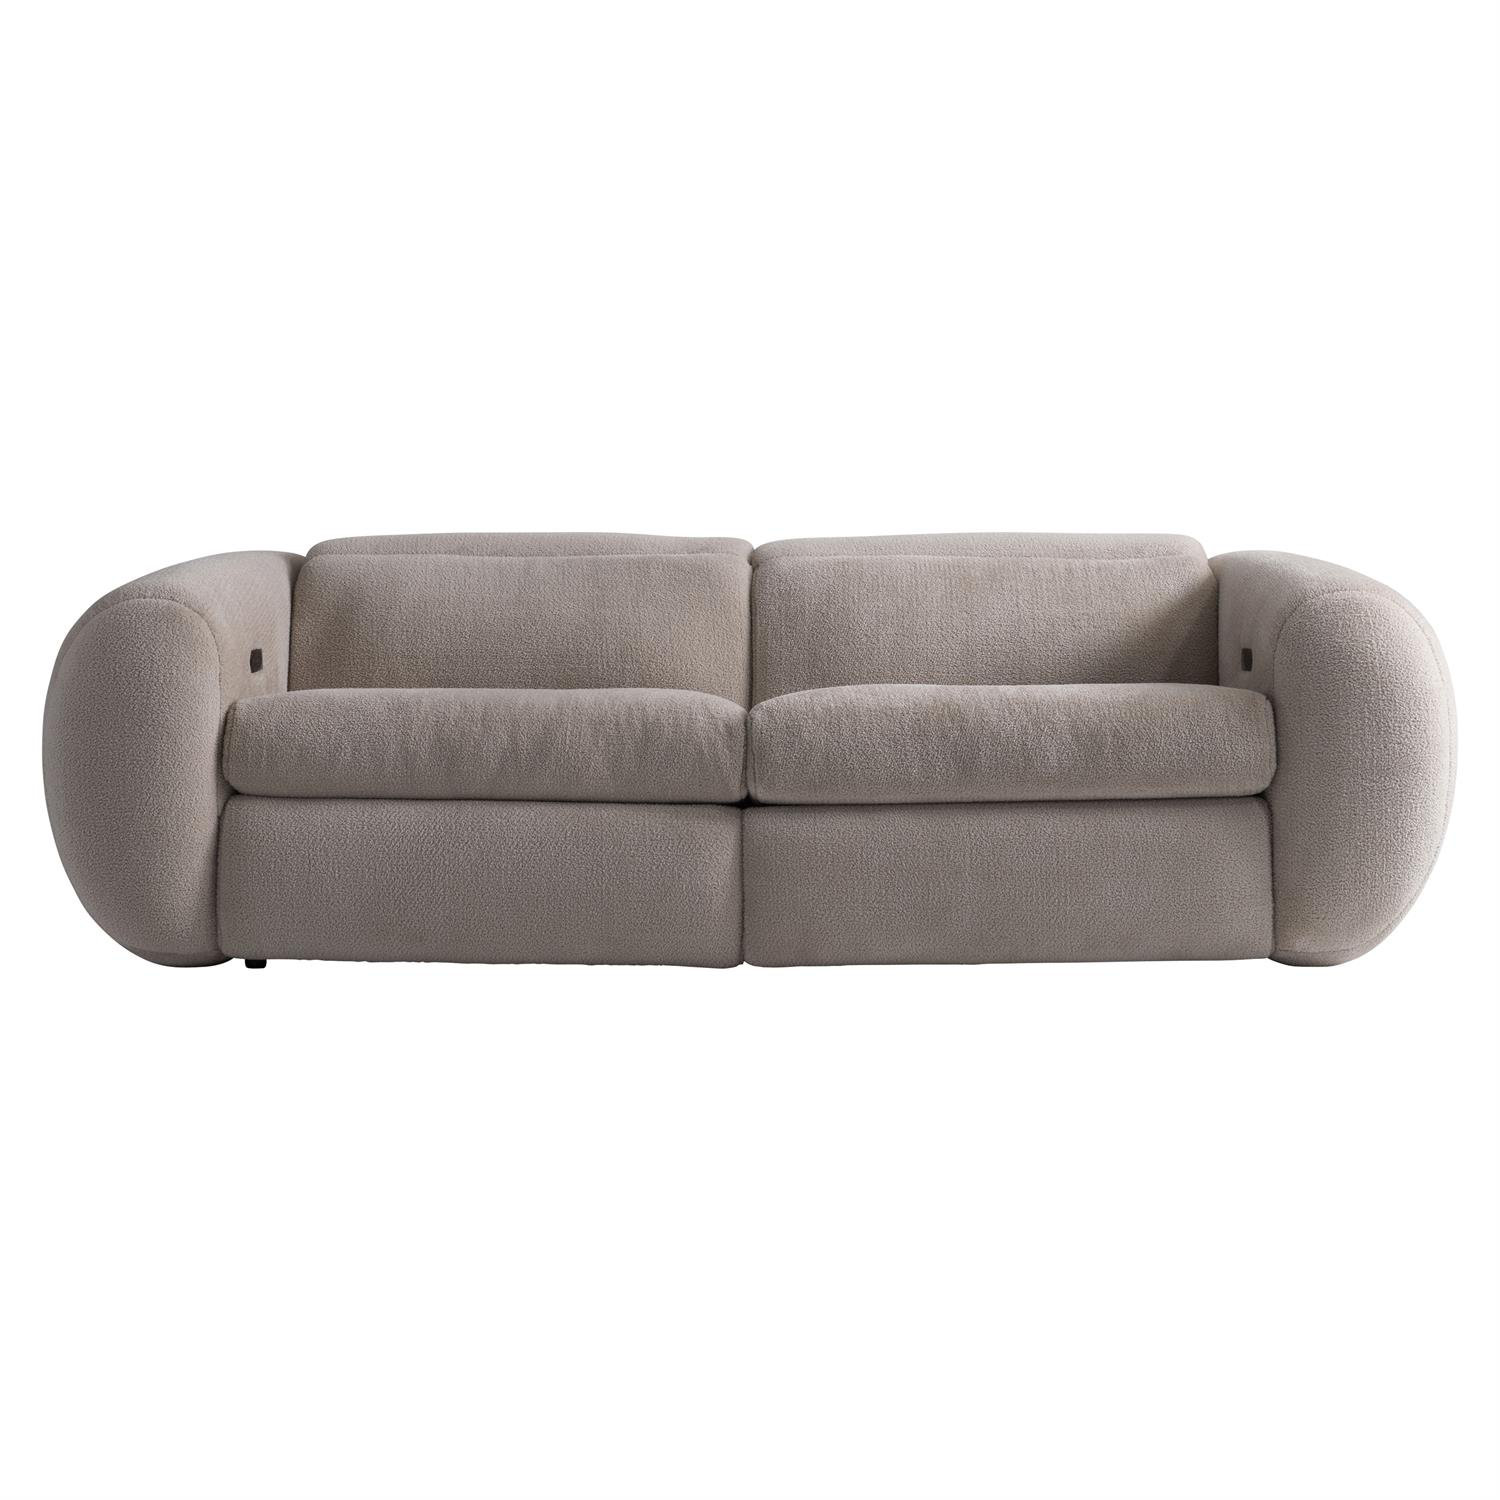 https://assets.wfcdn.com/im/02621839/compr-r85/2239/223957911/montreaux-97-leather-power-reclining-sofa.jpg